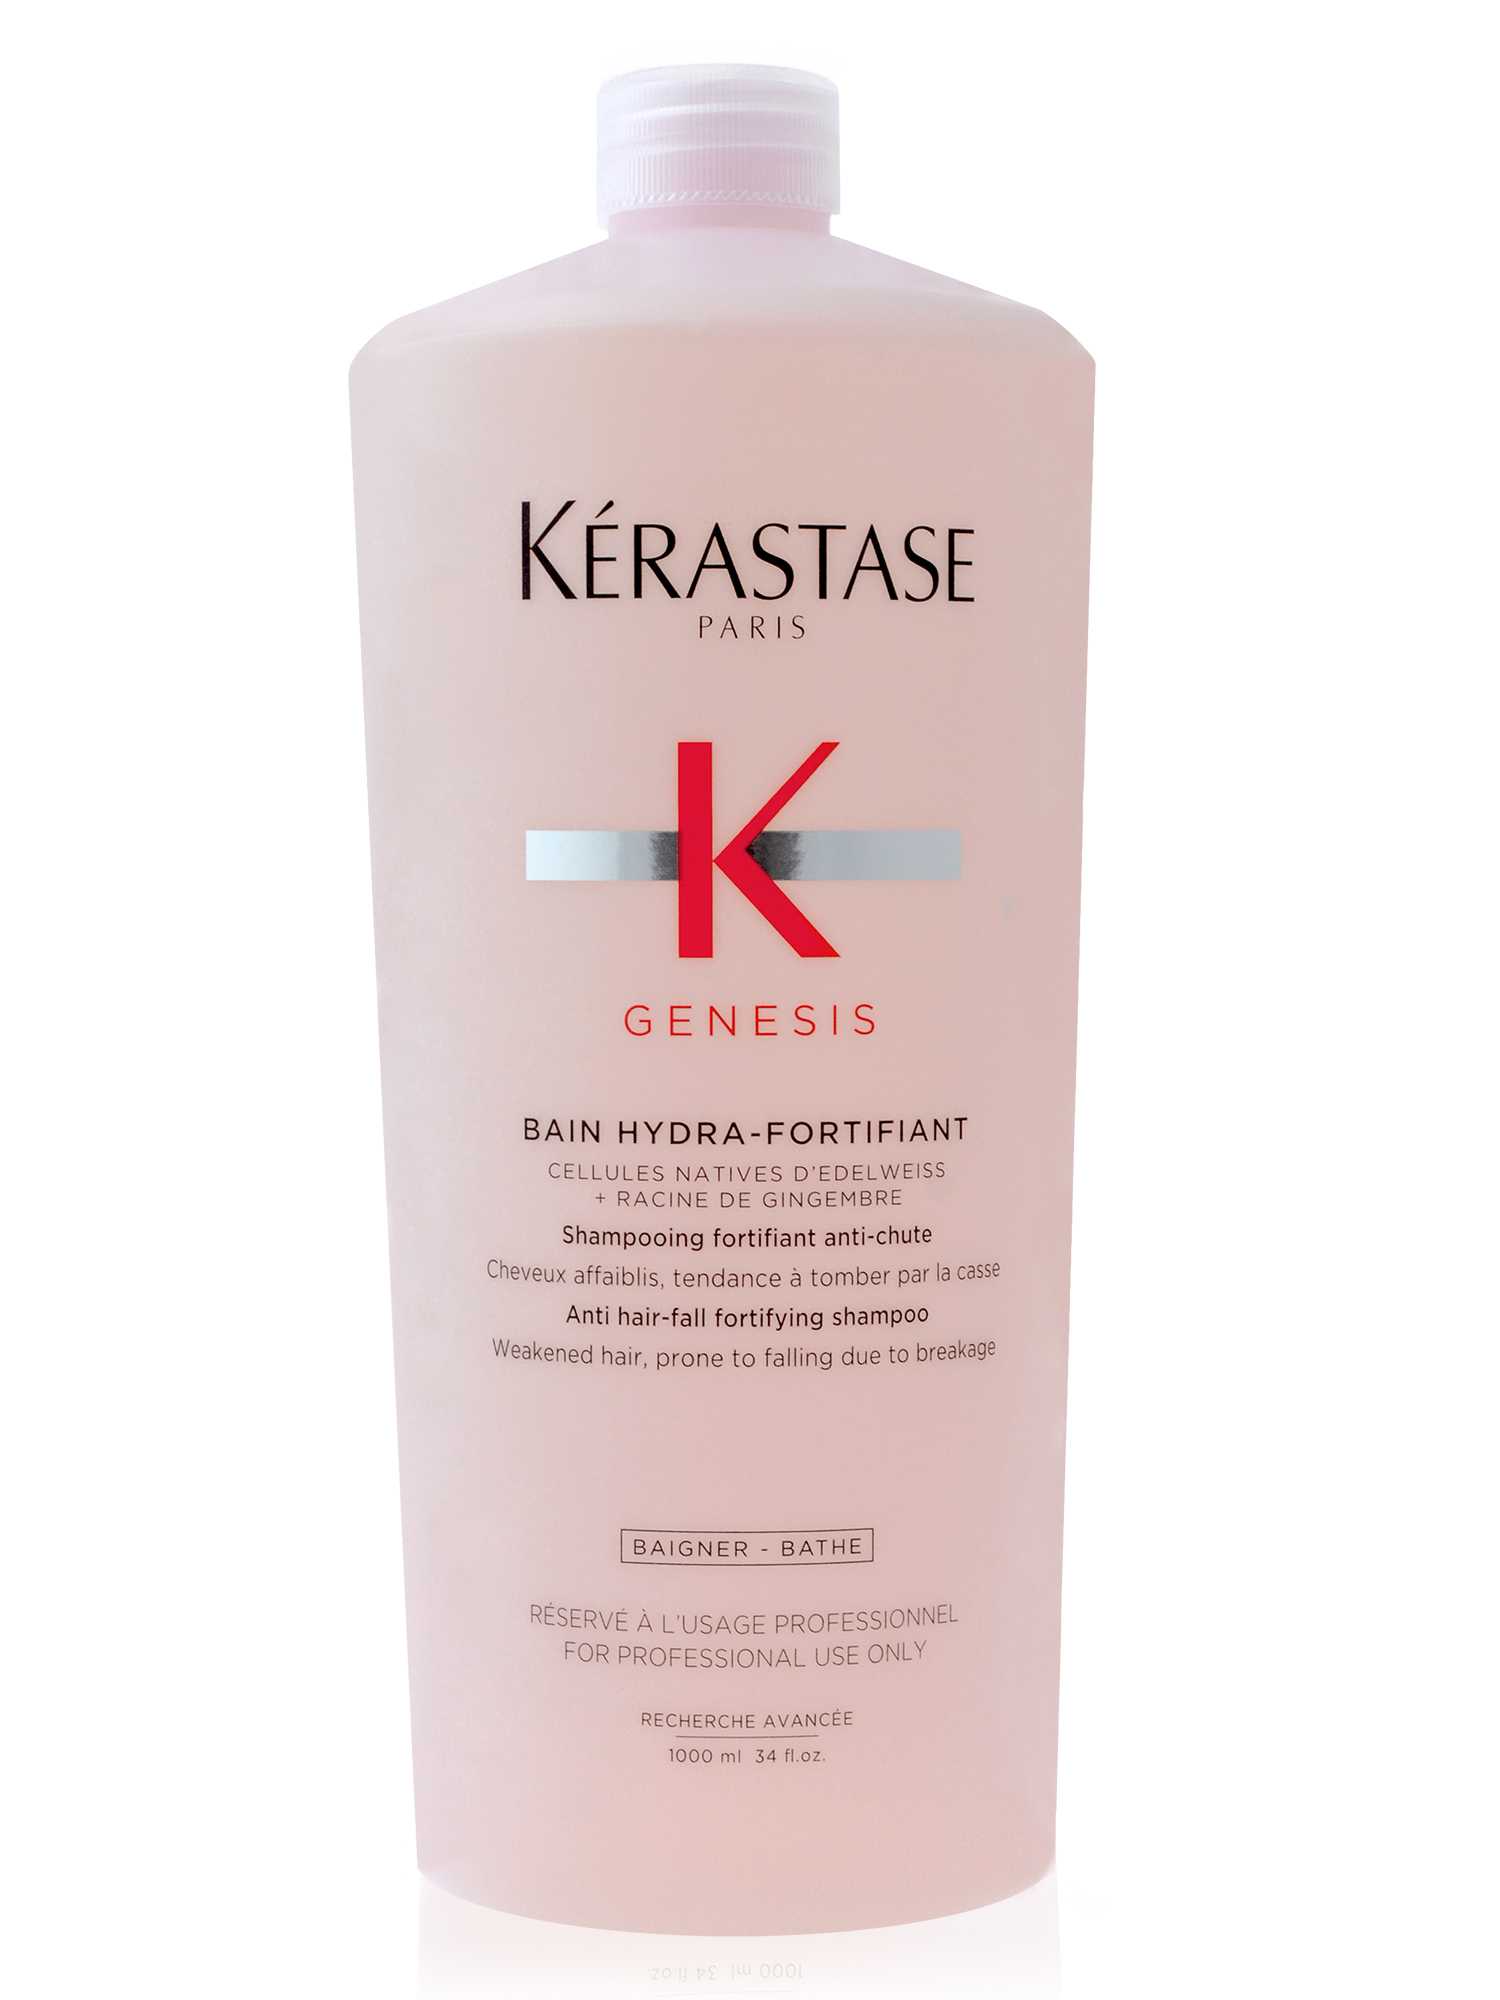 Posilující šampon pro vlasy se sklonem k padání Kérastase Genesis - 1000 ml + dárek zdarma